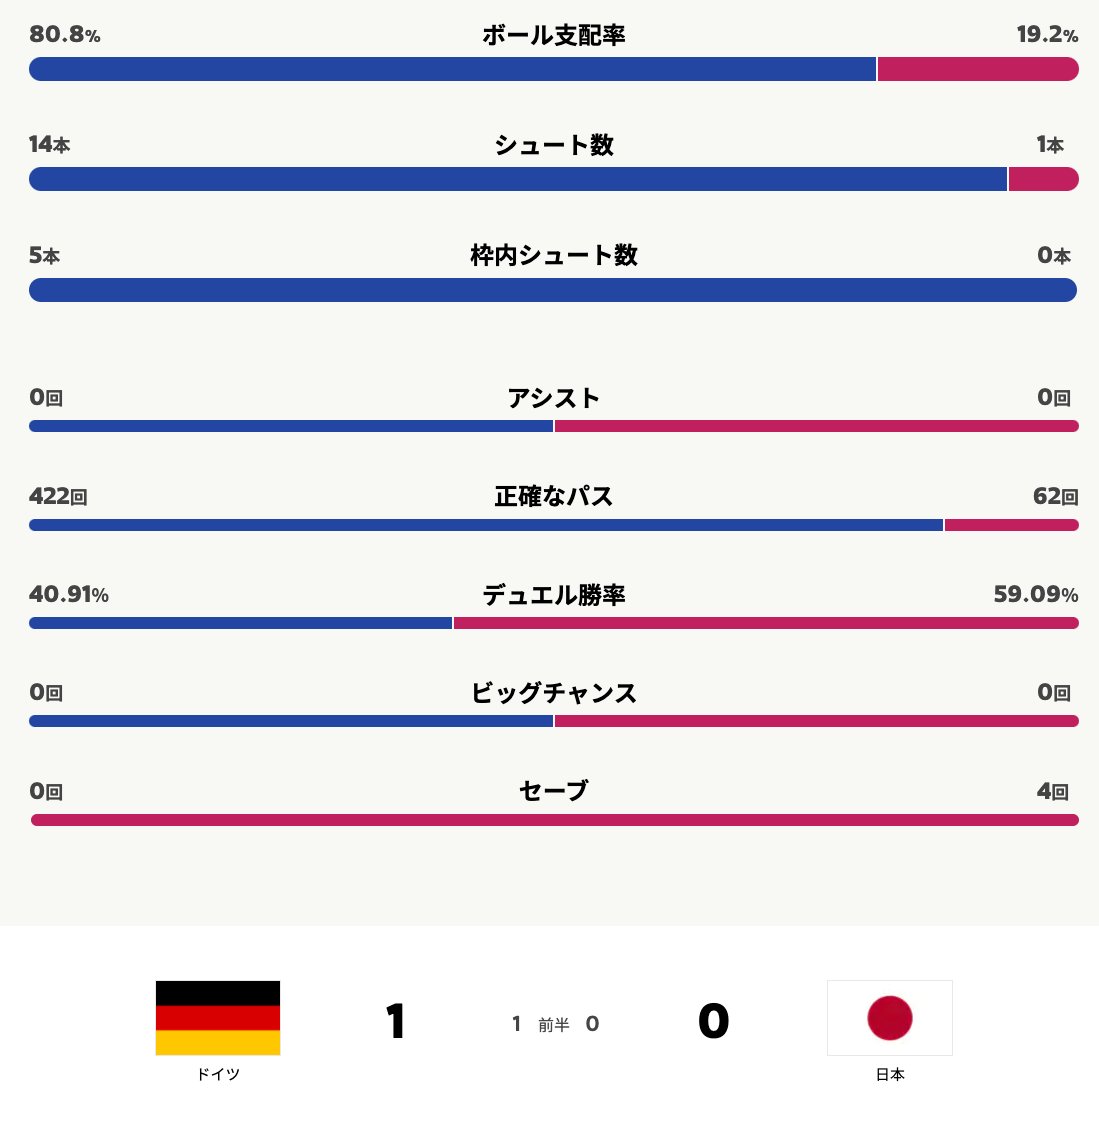 Fifa ワールドカップ カタール 22 完全ガイド By Abema サッカー日本代表 Vs ドイツ ２ １で日本が逆転勝利 前半 ドイツが圧倒的なボール支配率で攻め続け Pkで先制１点 後半 日本が攻める場面が増えシュート数を伸ばし2得点で逆転 詳細